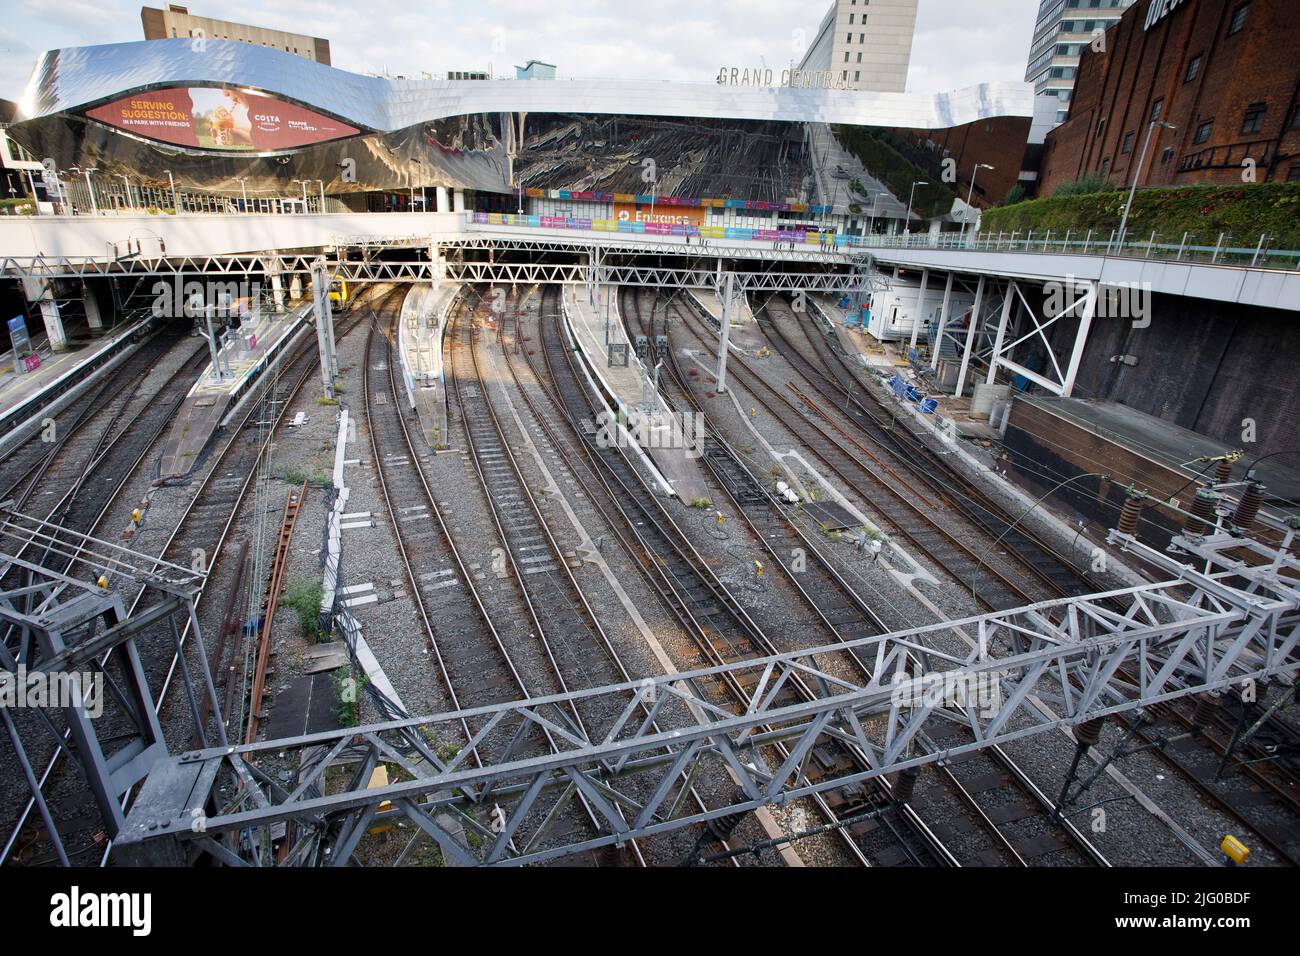 New Street, Birmingham Central Railway Station am 2. Tag des National Rail Strike. Im Bild: Leere Bahngleise, die normalerweise voll mit Zügen an der neuen Street Station sind. Stockfoto